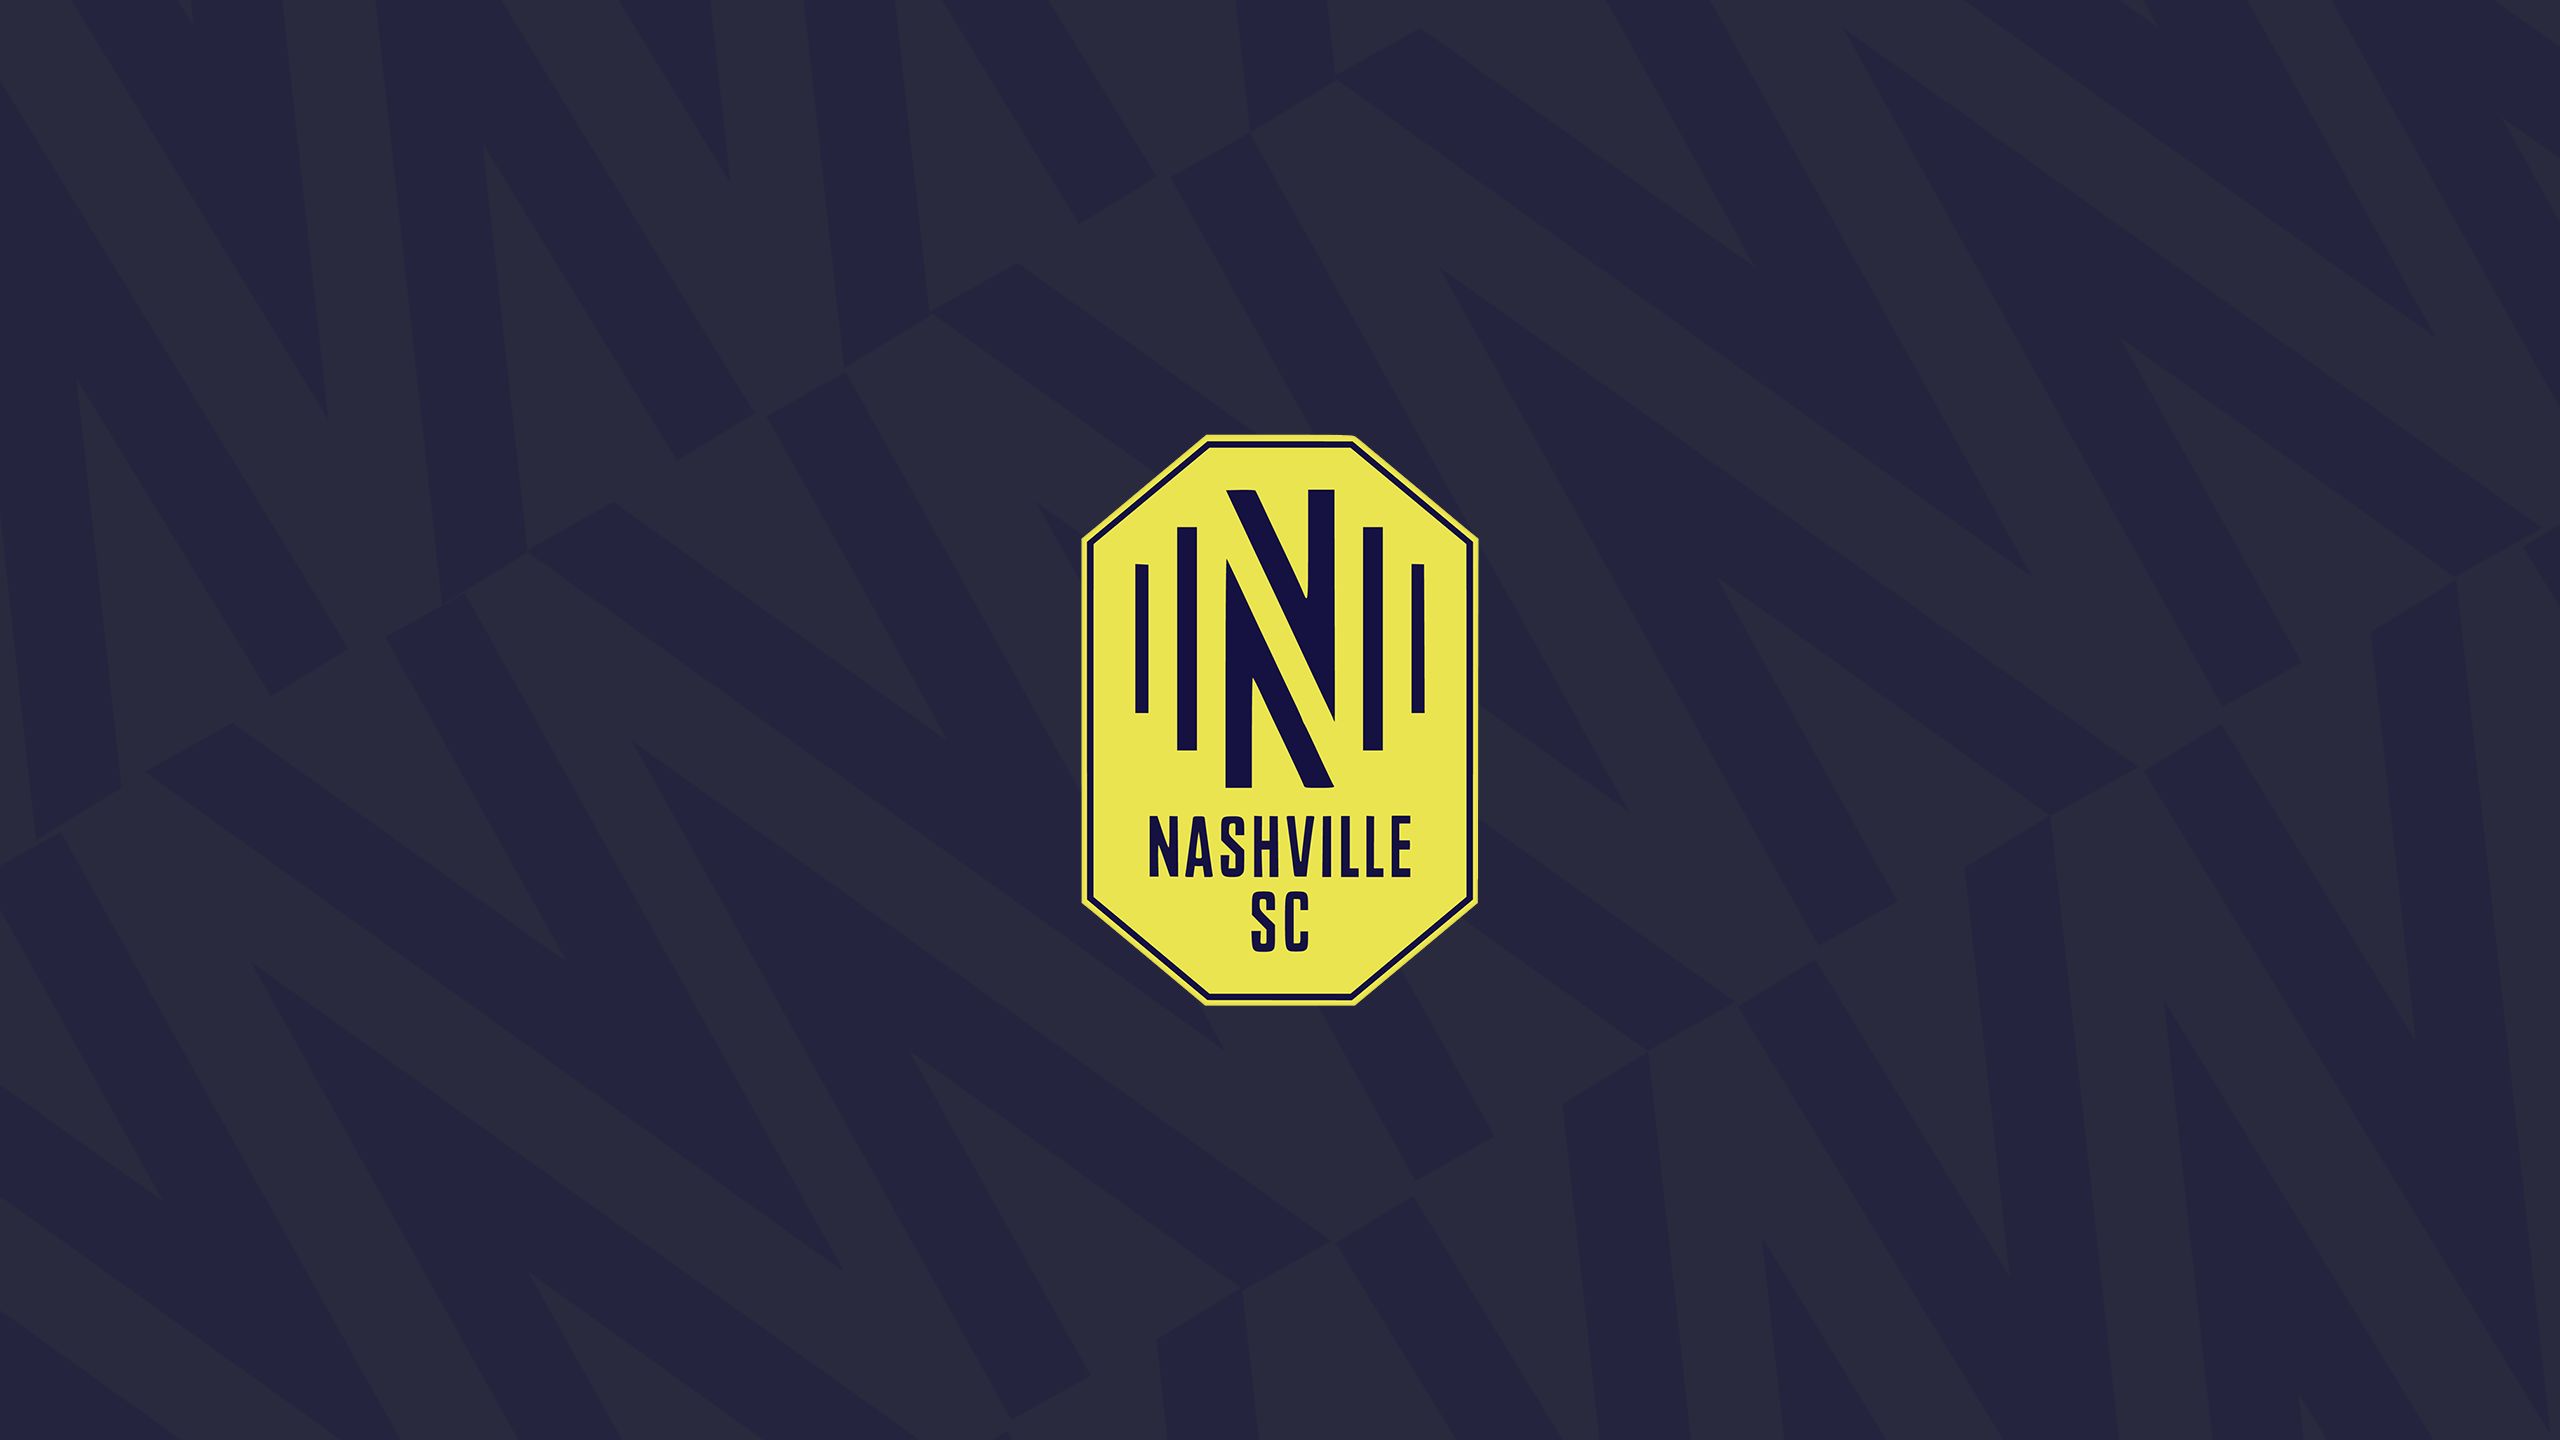 Nashville Sc Desktop Background Image